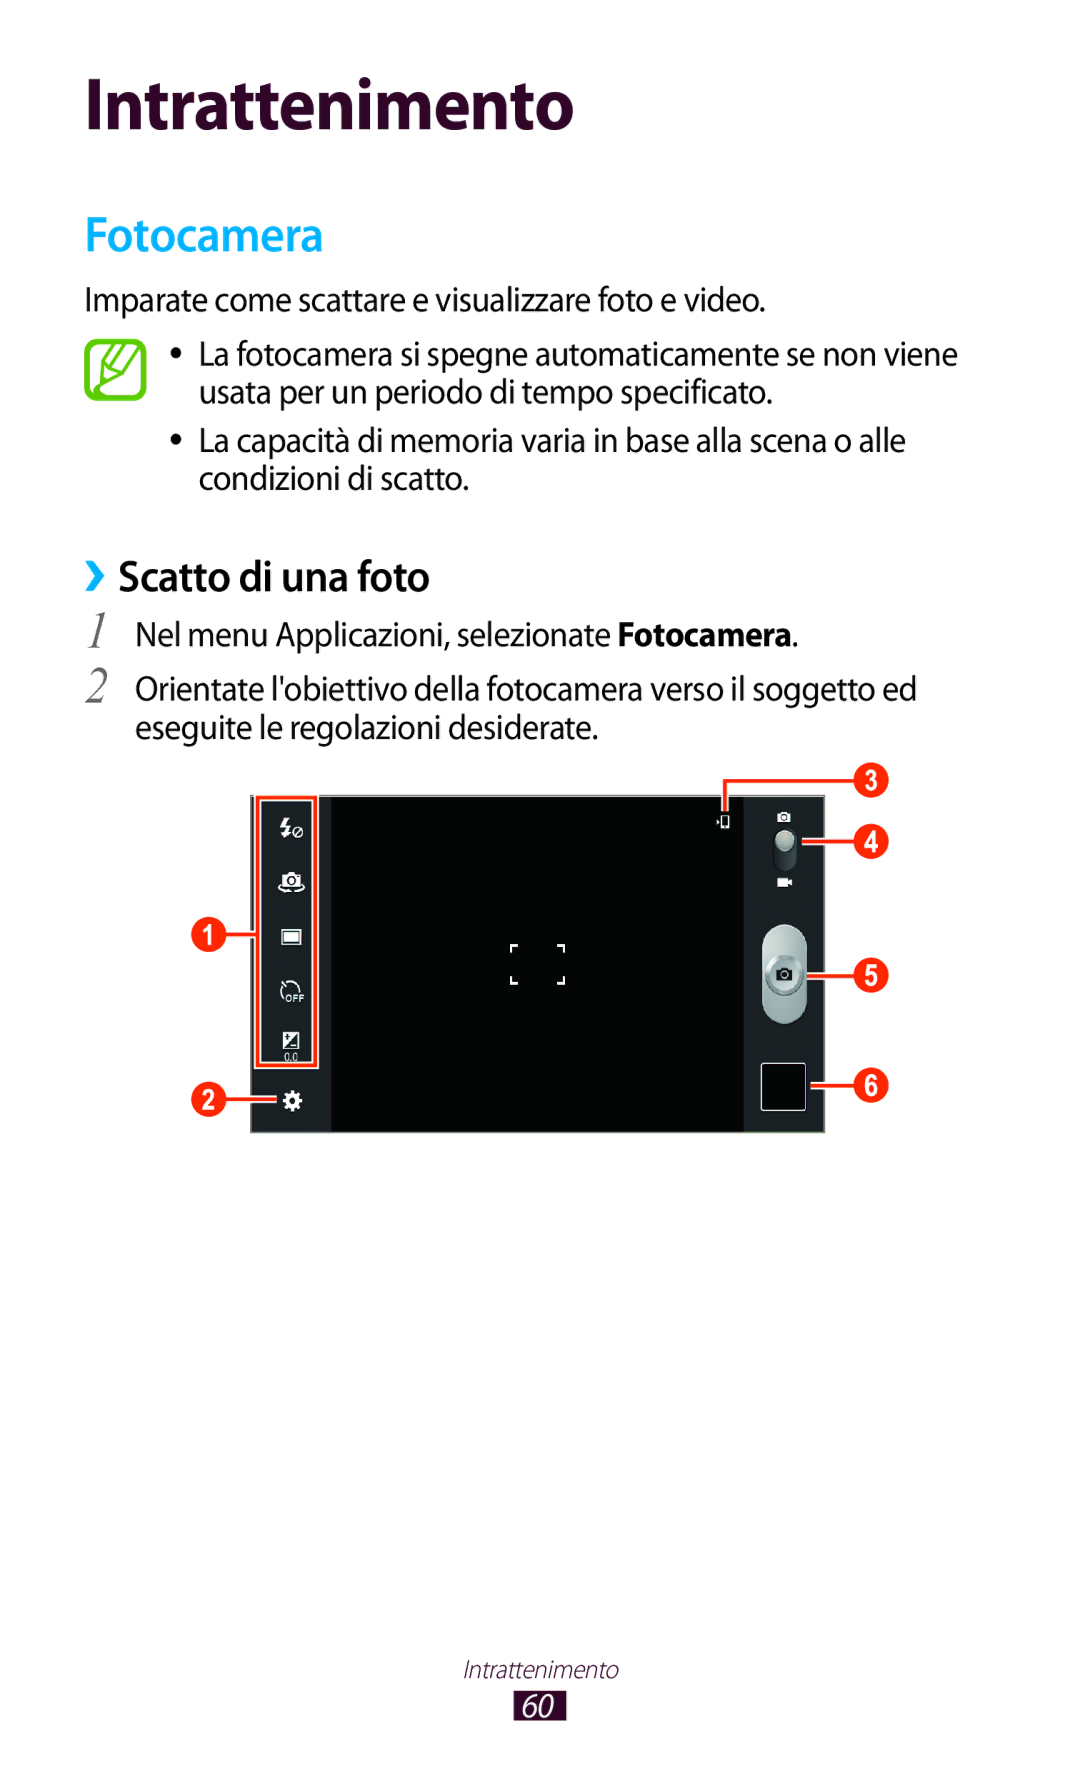 Samsung GT-P7500UWDOMN manual Fotocamera, ››Scatto di una foto, Imparate come scattare e visualizzare foto e video 